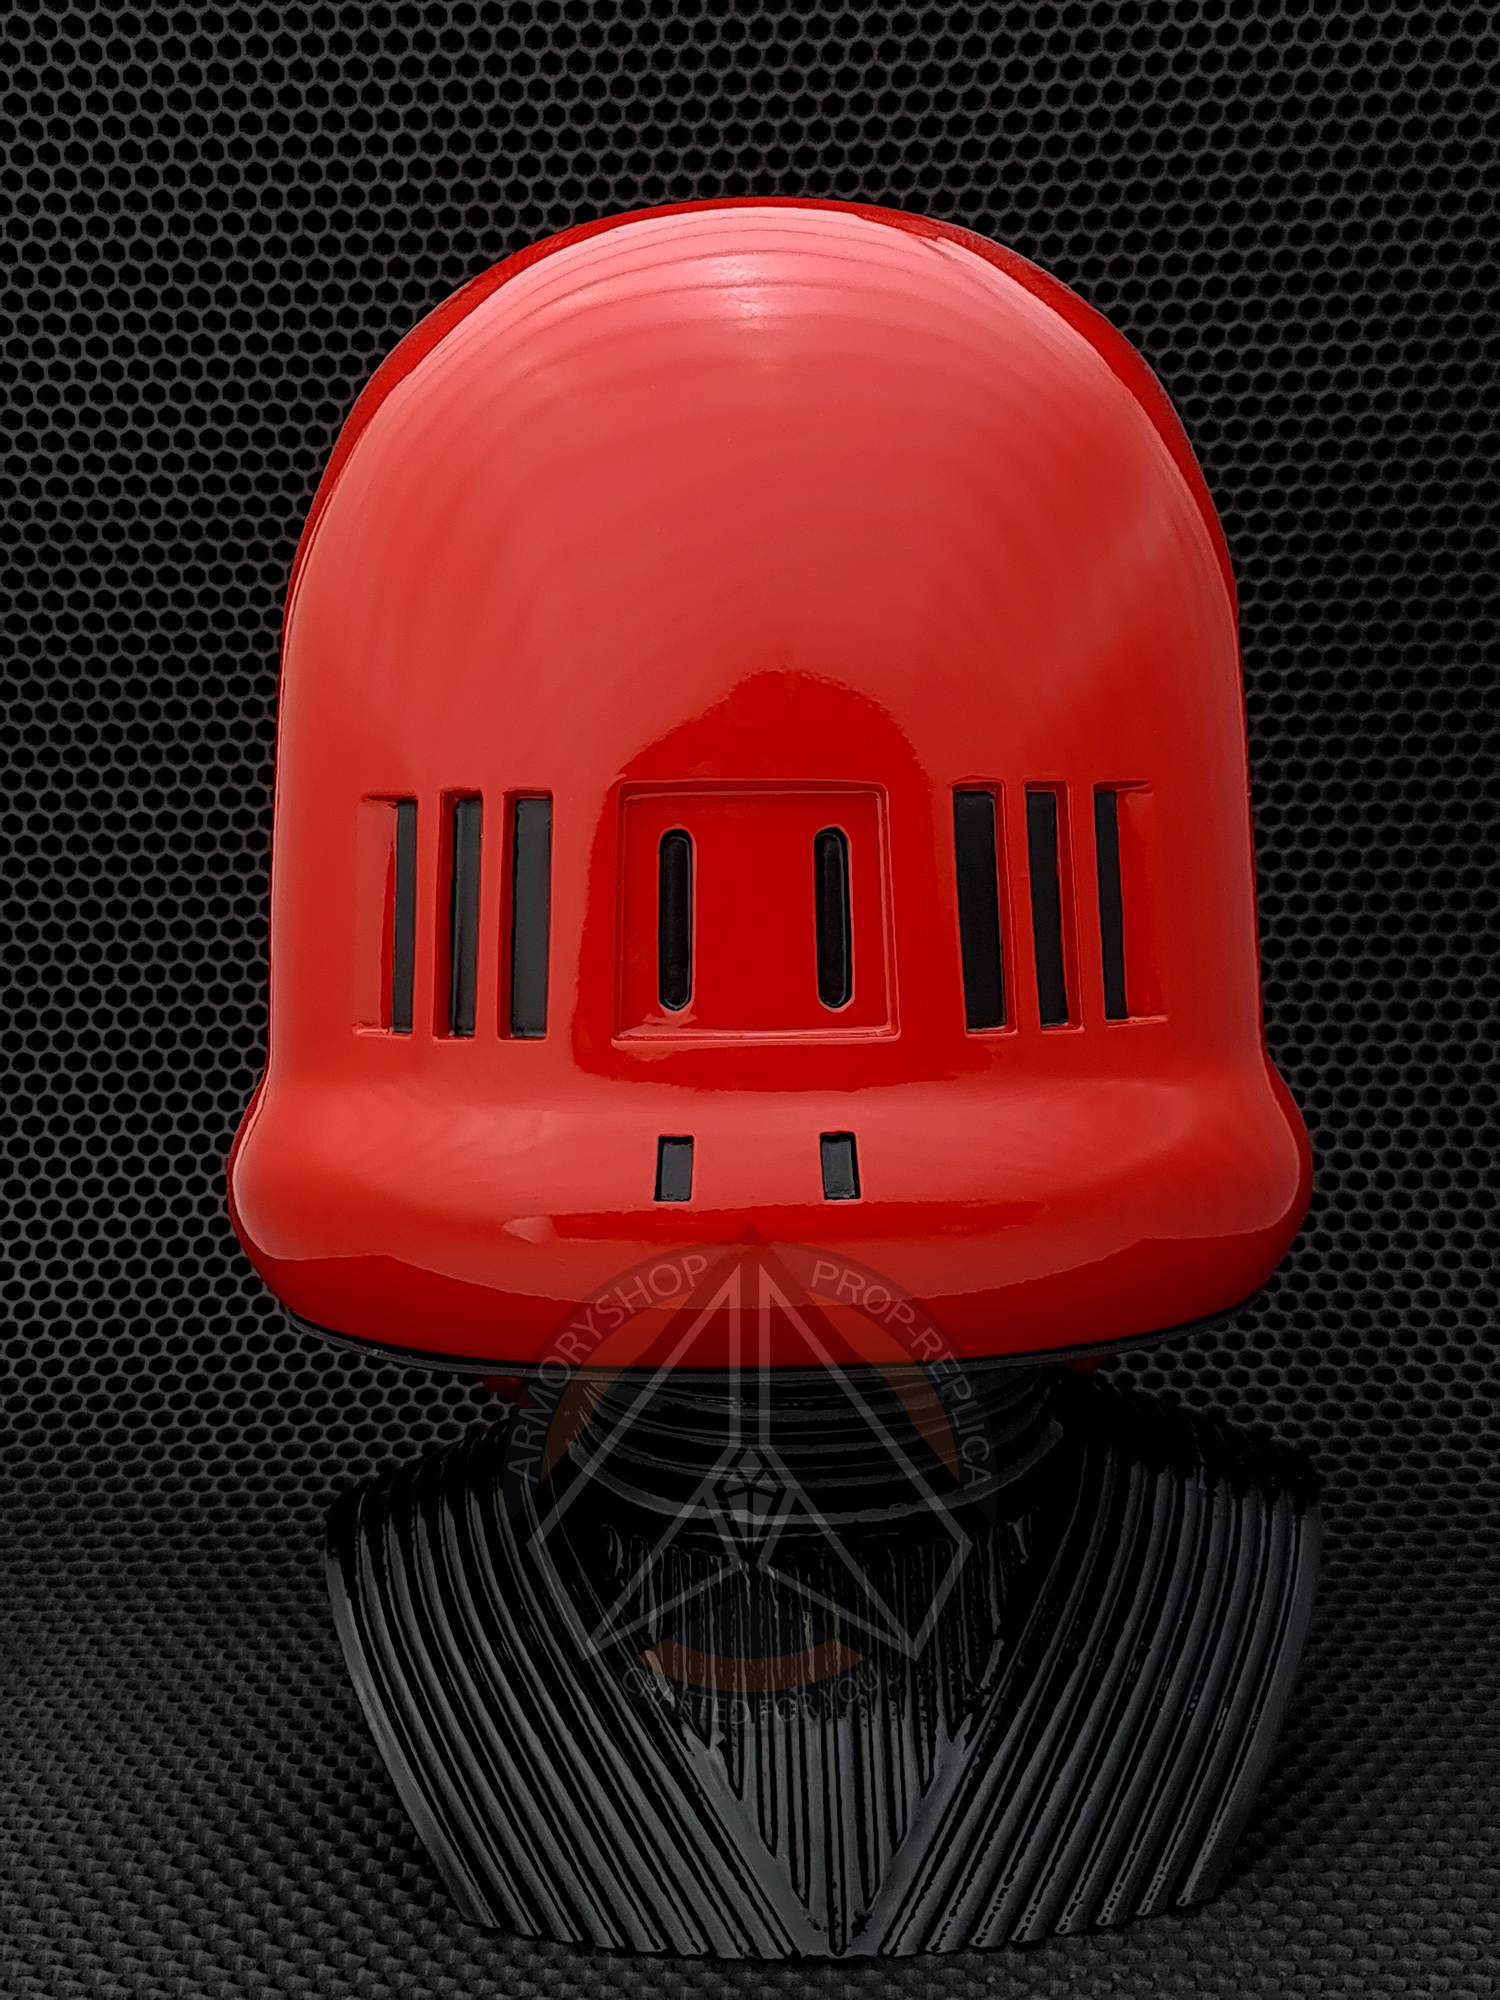 DeathTrooper CRIMSON helmet